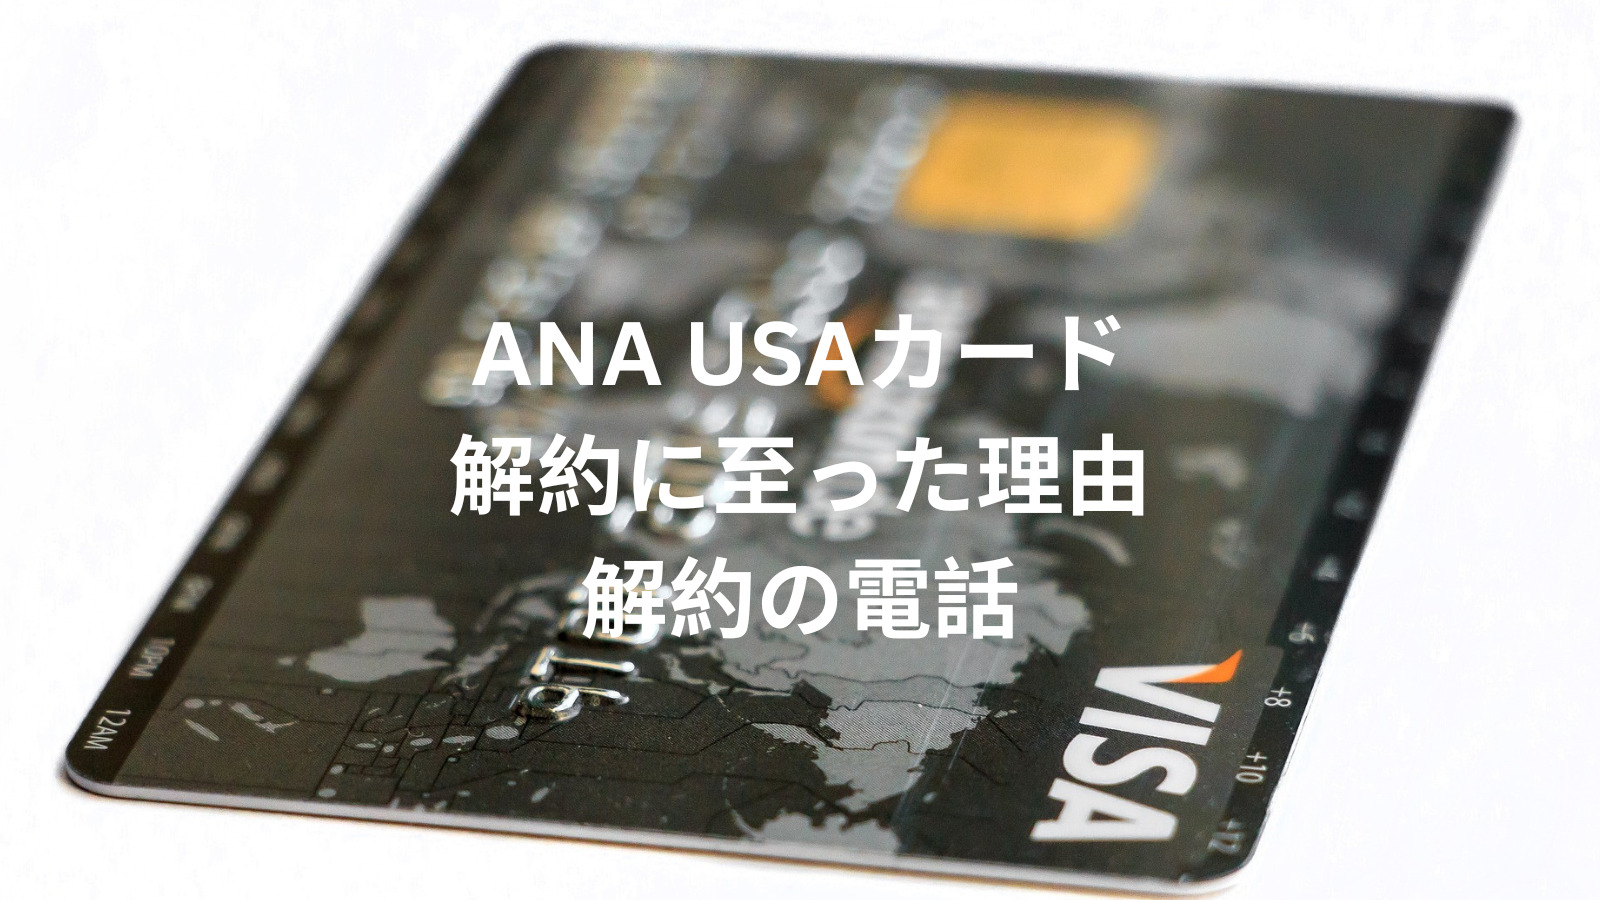 Close ANA USA Card